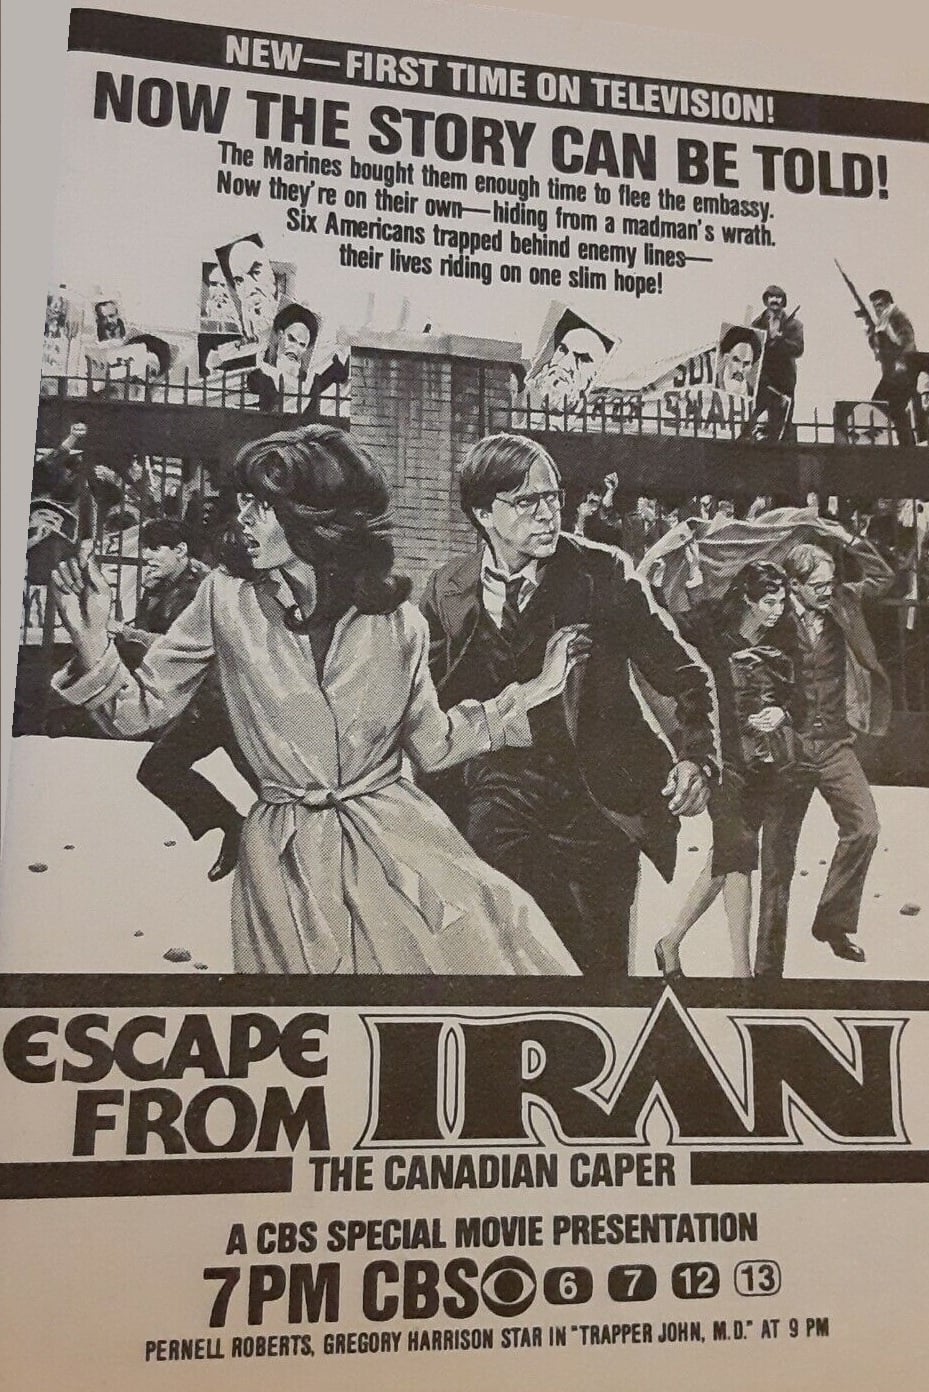 Escape From Iran: The Canadian Caper (1981)